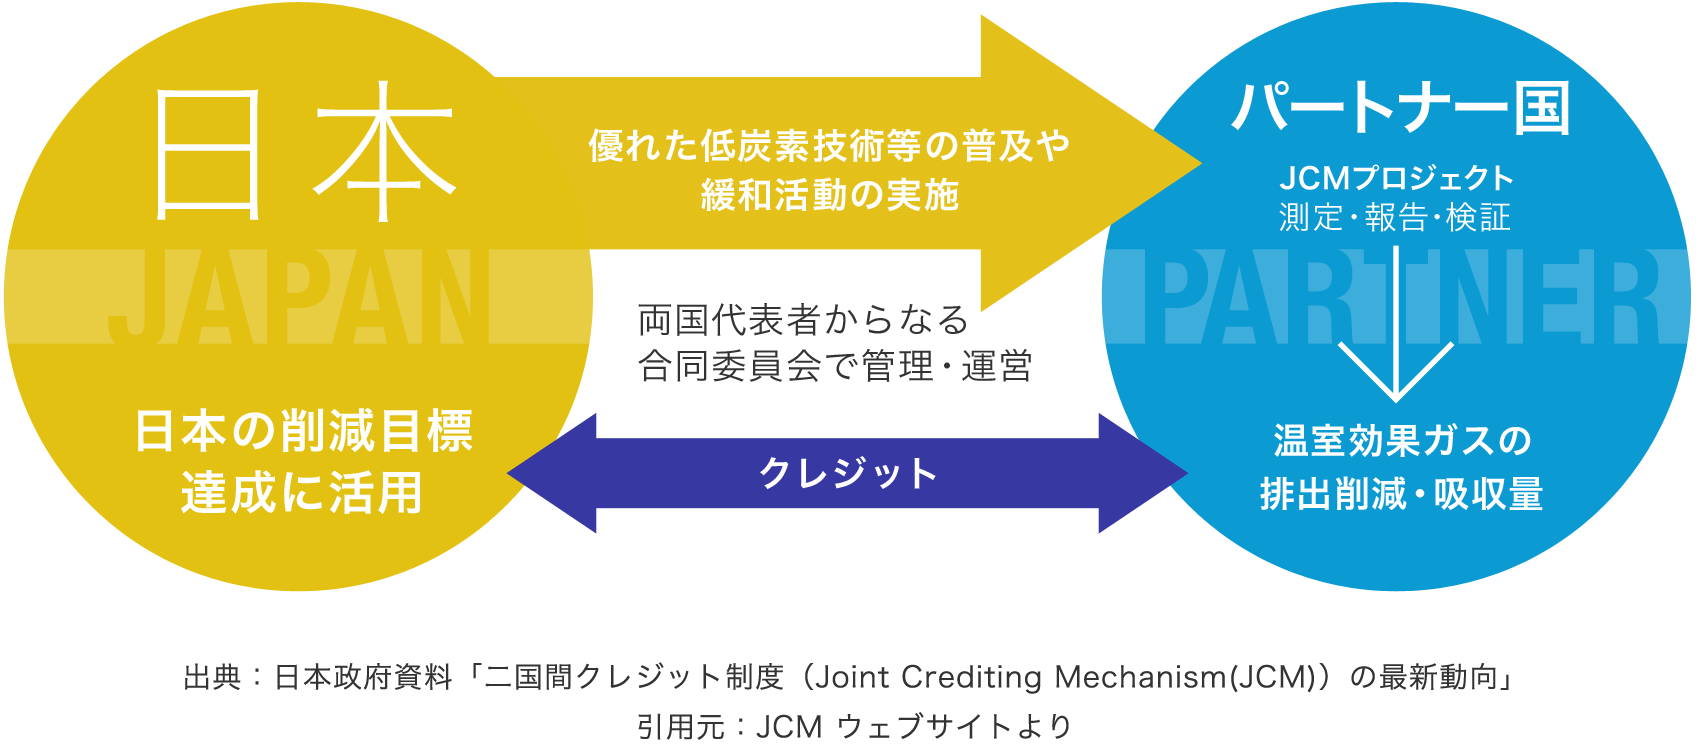 出典：日本政府資料「二国間クレジット制度（Joint Crediting Mechanism(JCM)）の最新動向」引用元：JCM ウェブサイトより